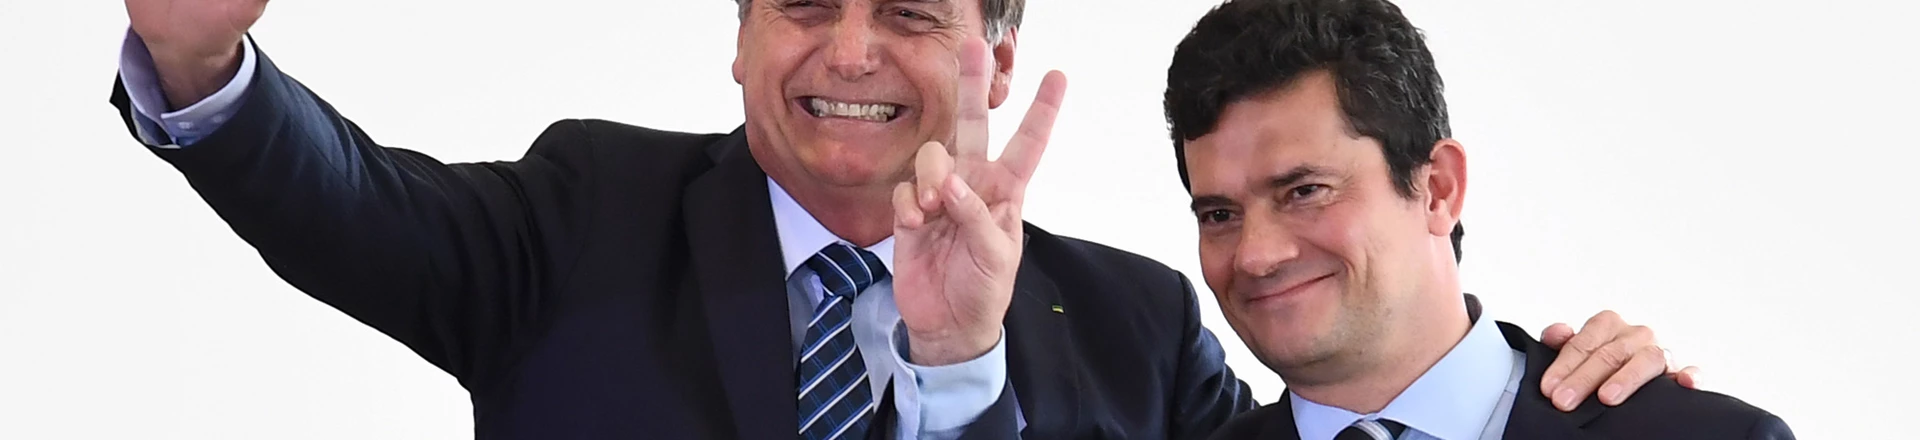 ‘Não tem corrupção’: como a Lava Jato (ainda) ajuda na popularidade de Bolsonaro